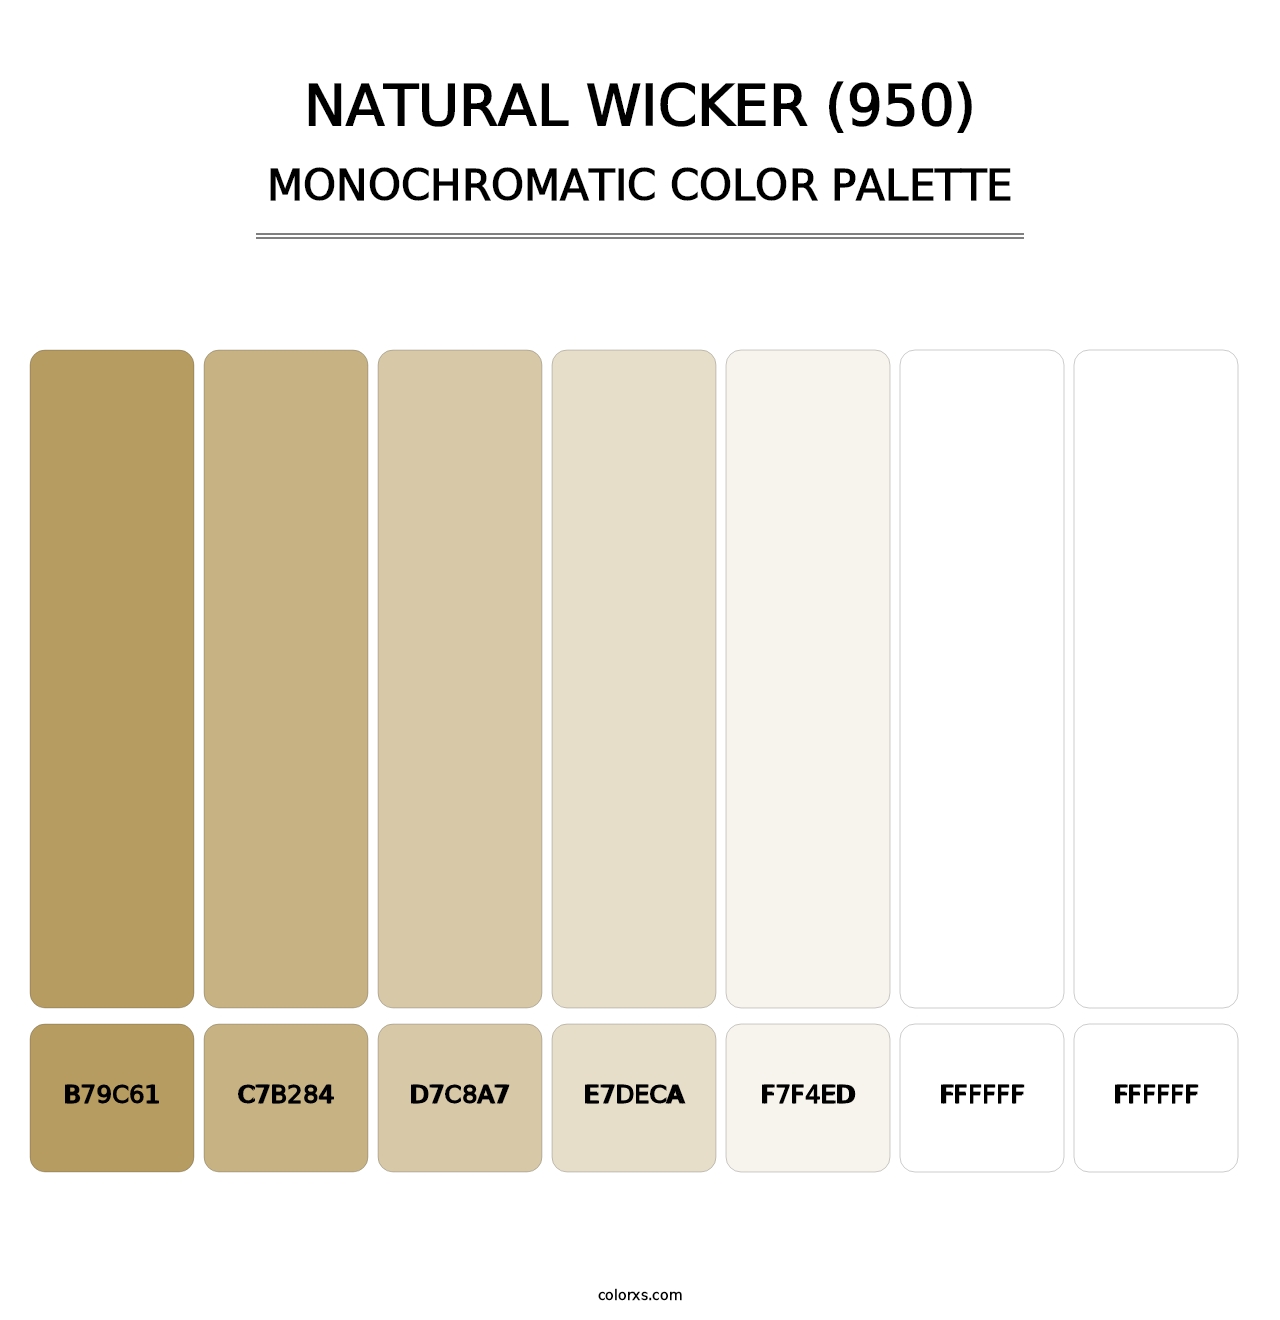 Natural Wicker (950) - Monochromatic Color Palette